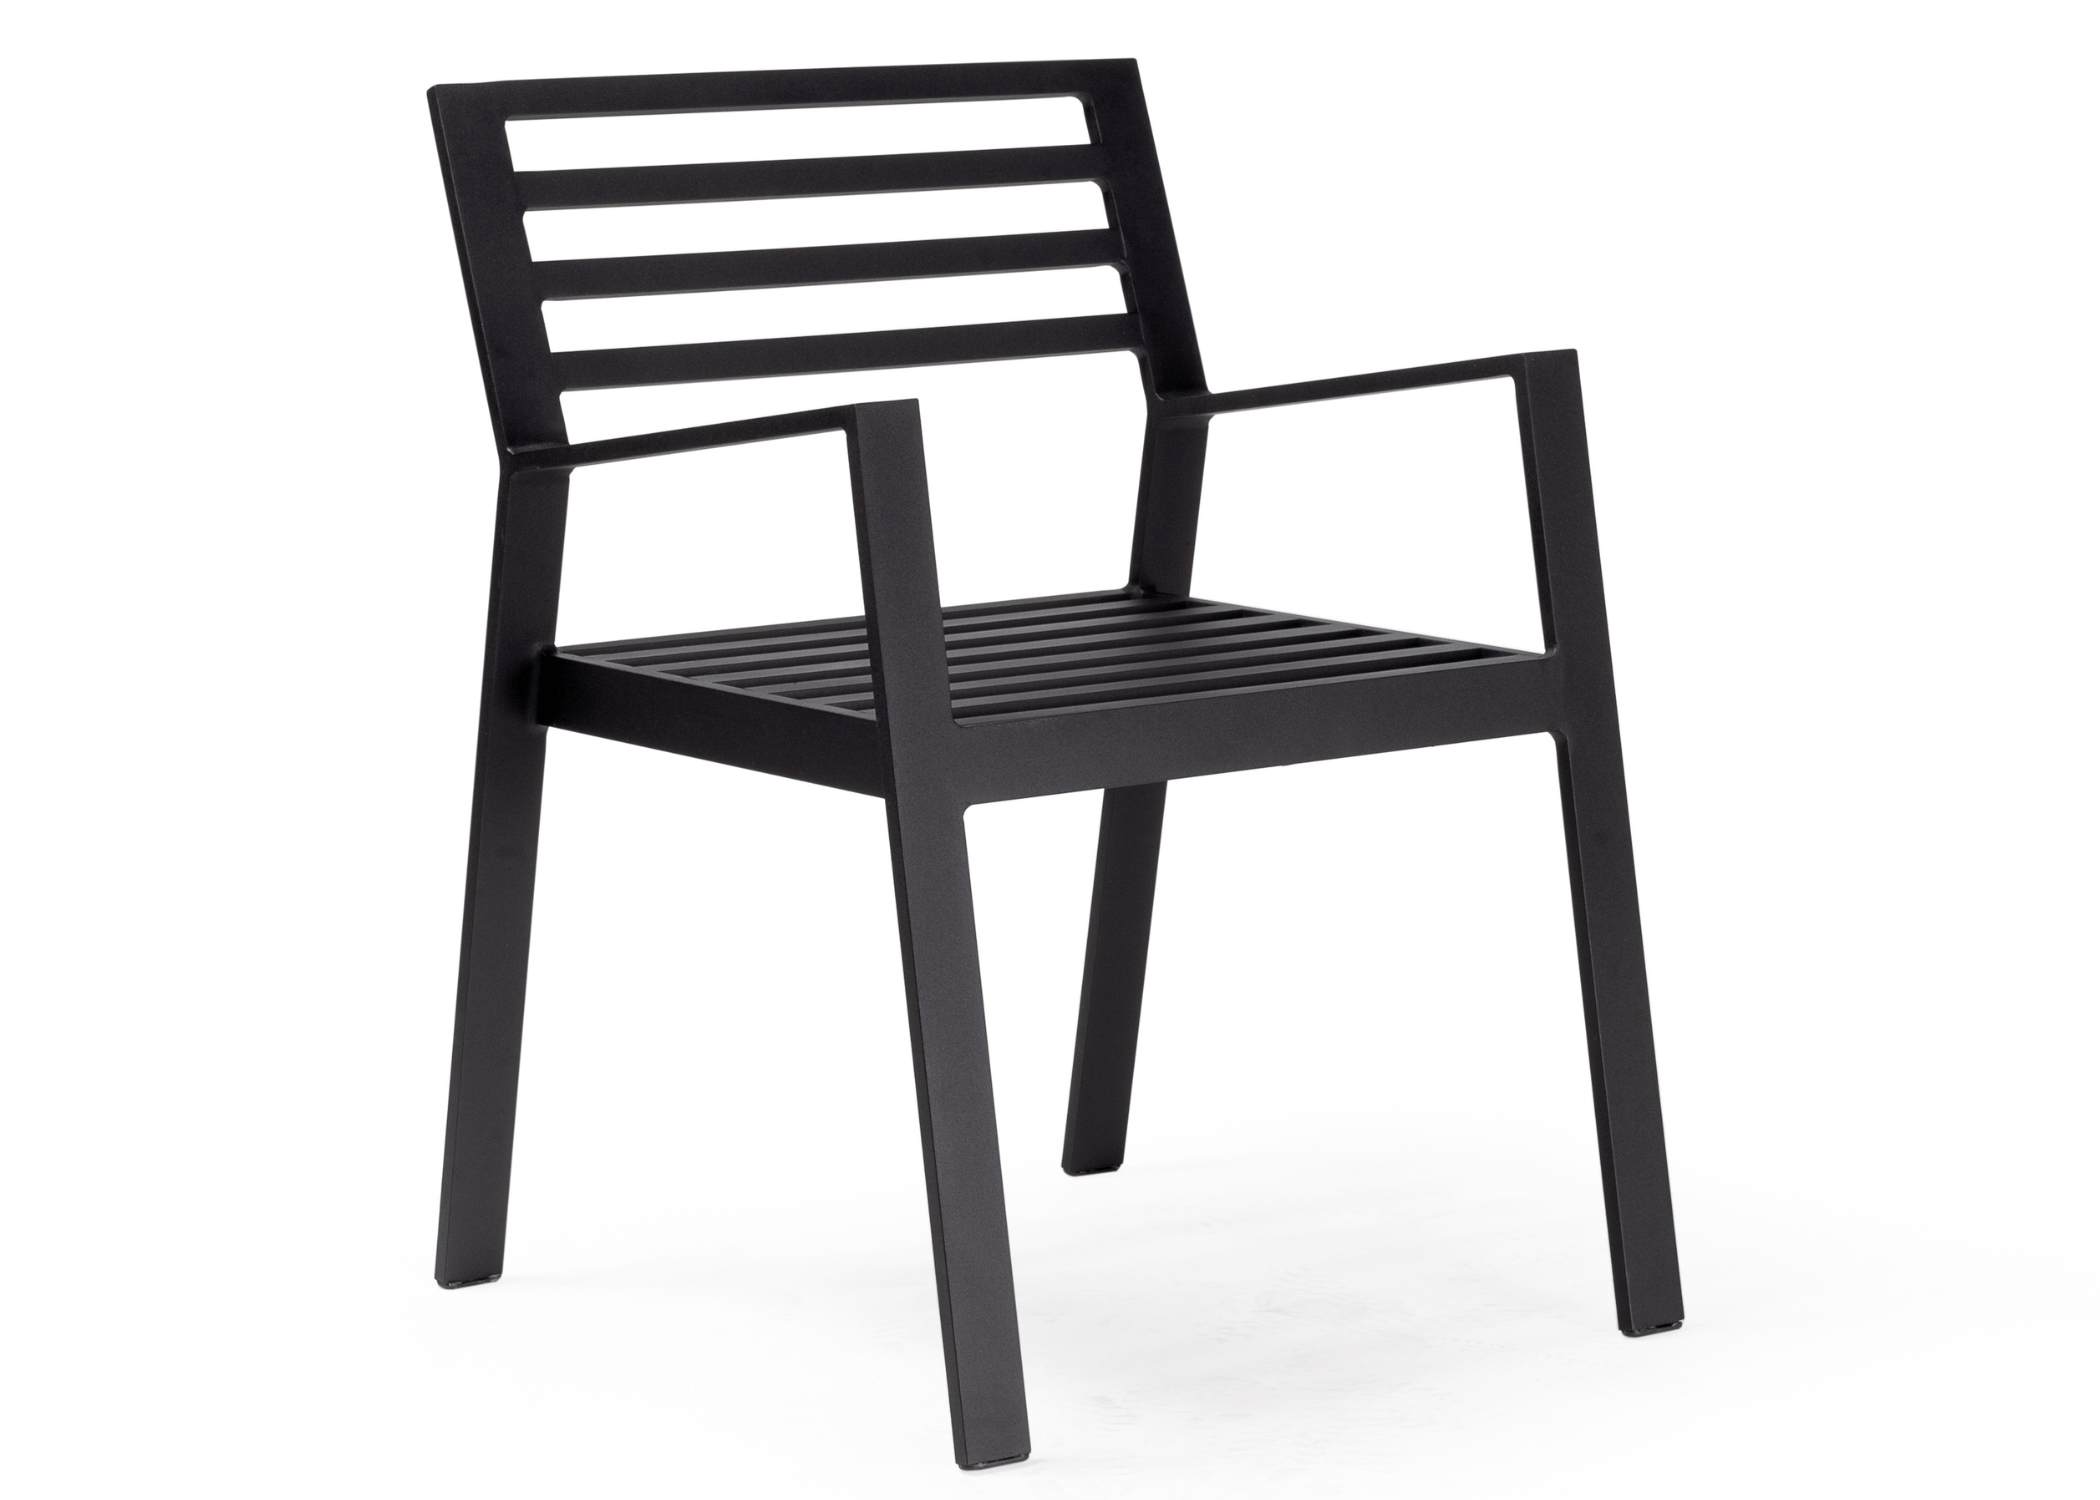 Cadeira Zen em destaque, uma síntese perfeita de durabilidade e estilo para ambientes externos.